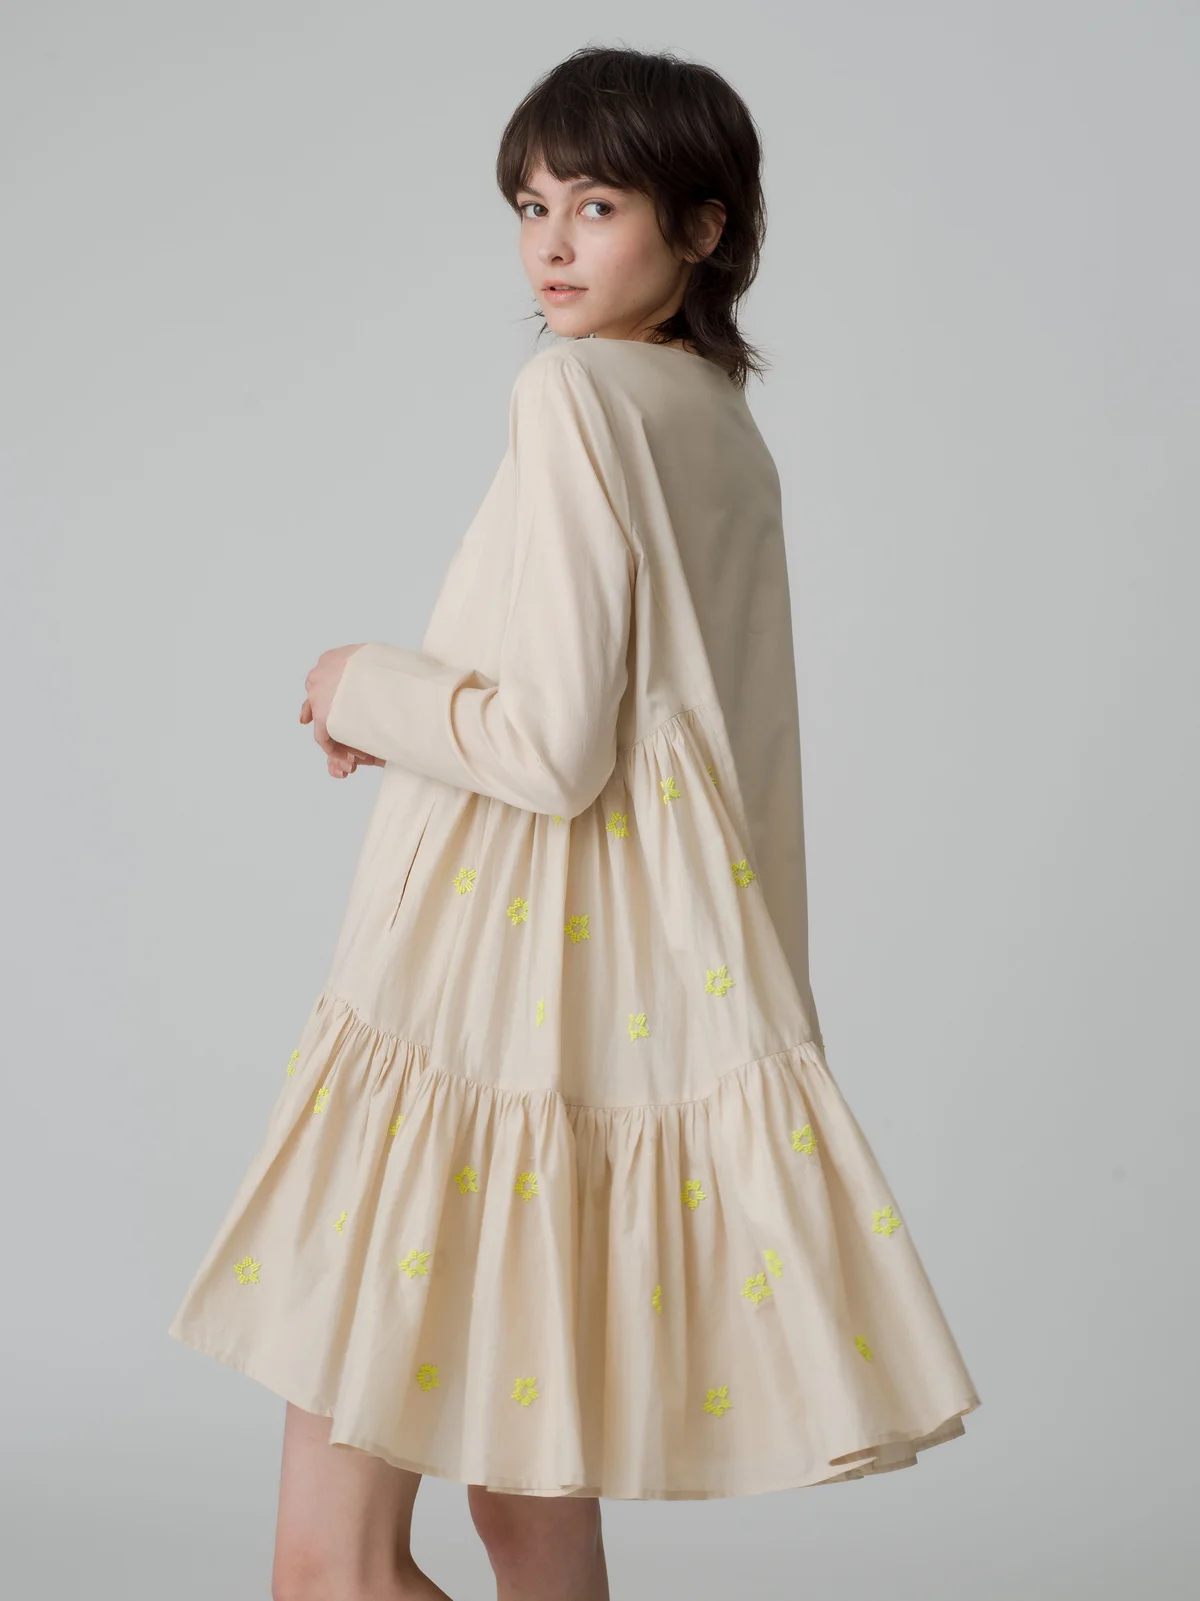 デザイナー来日を記念して特別なドレス「マーテル」も登場,マーレットのポップアップストアが伊勢丹新宿店で開催